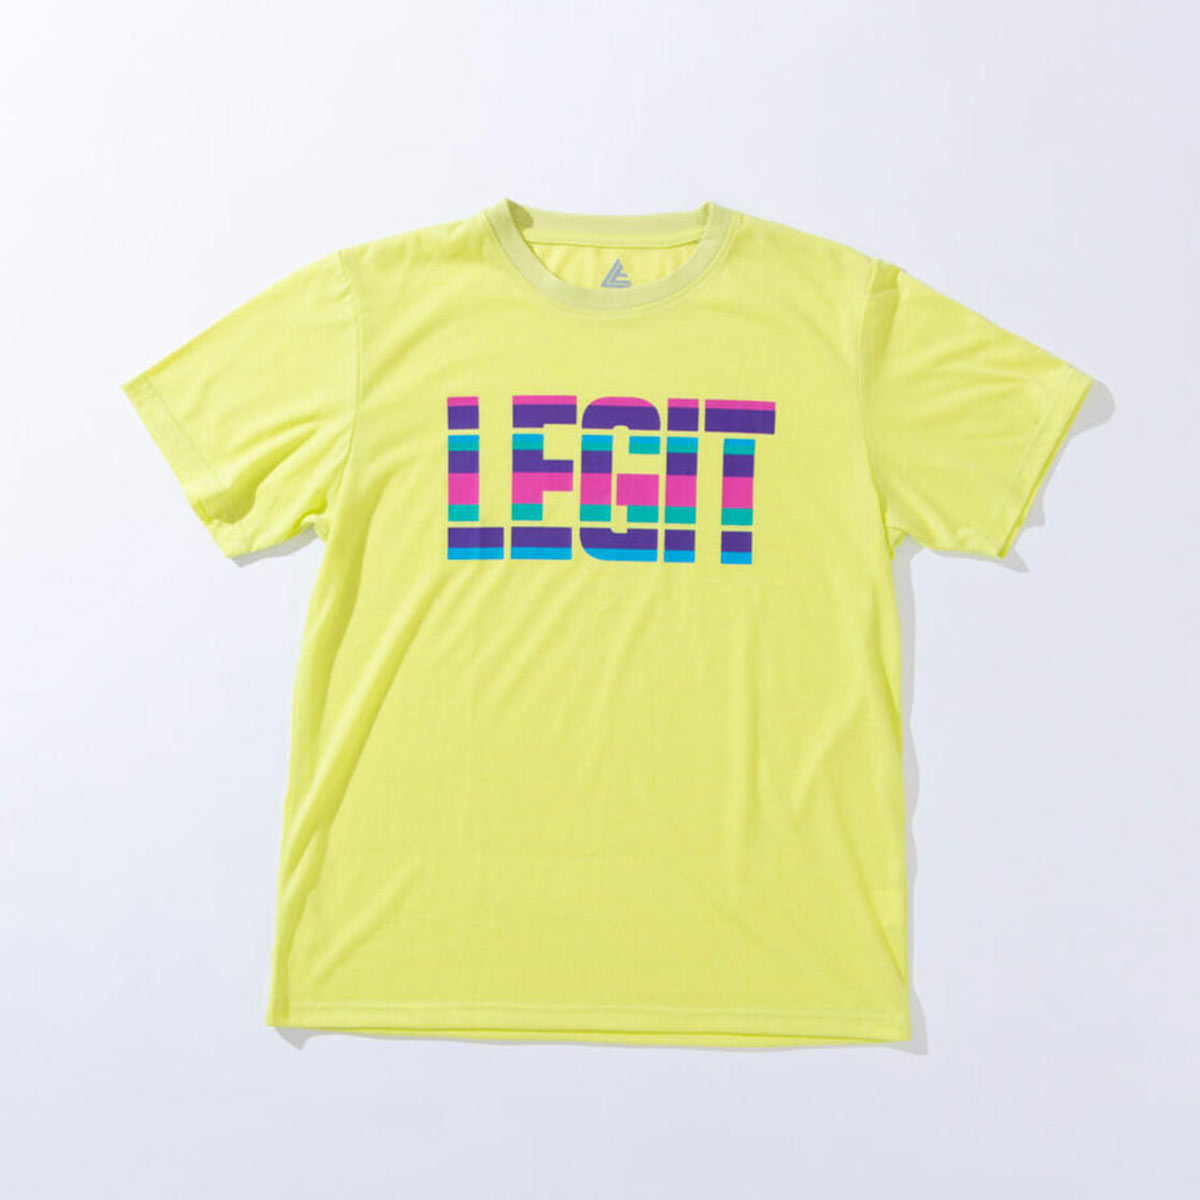 【メール便OK】LEGIT(レジット) 2301-1001 SEPARATE Tシャツ バスケットシャツ 半袖 Tシャツ メンズ レディース